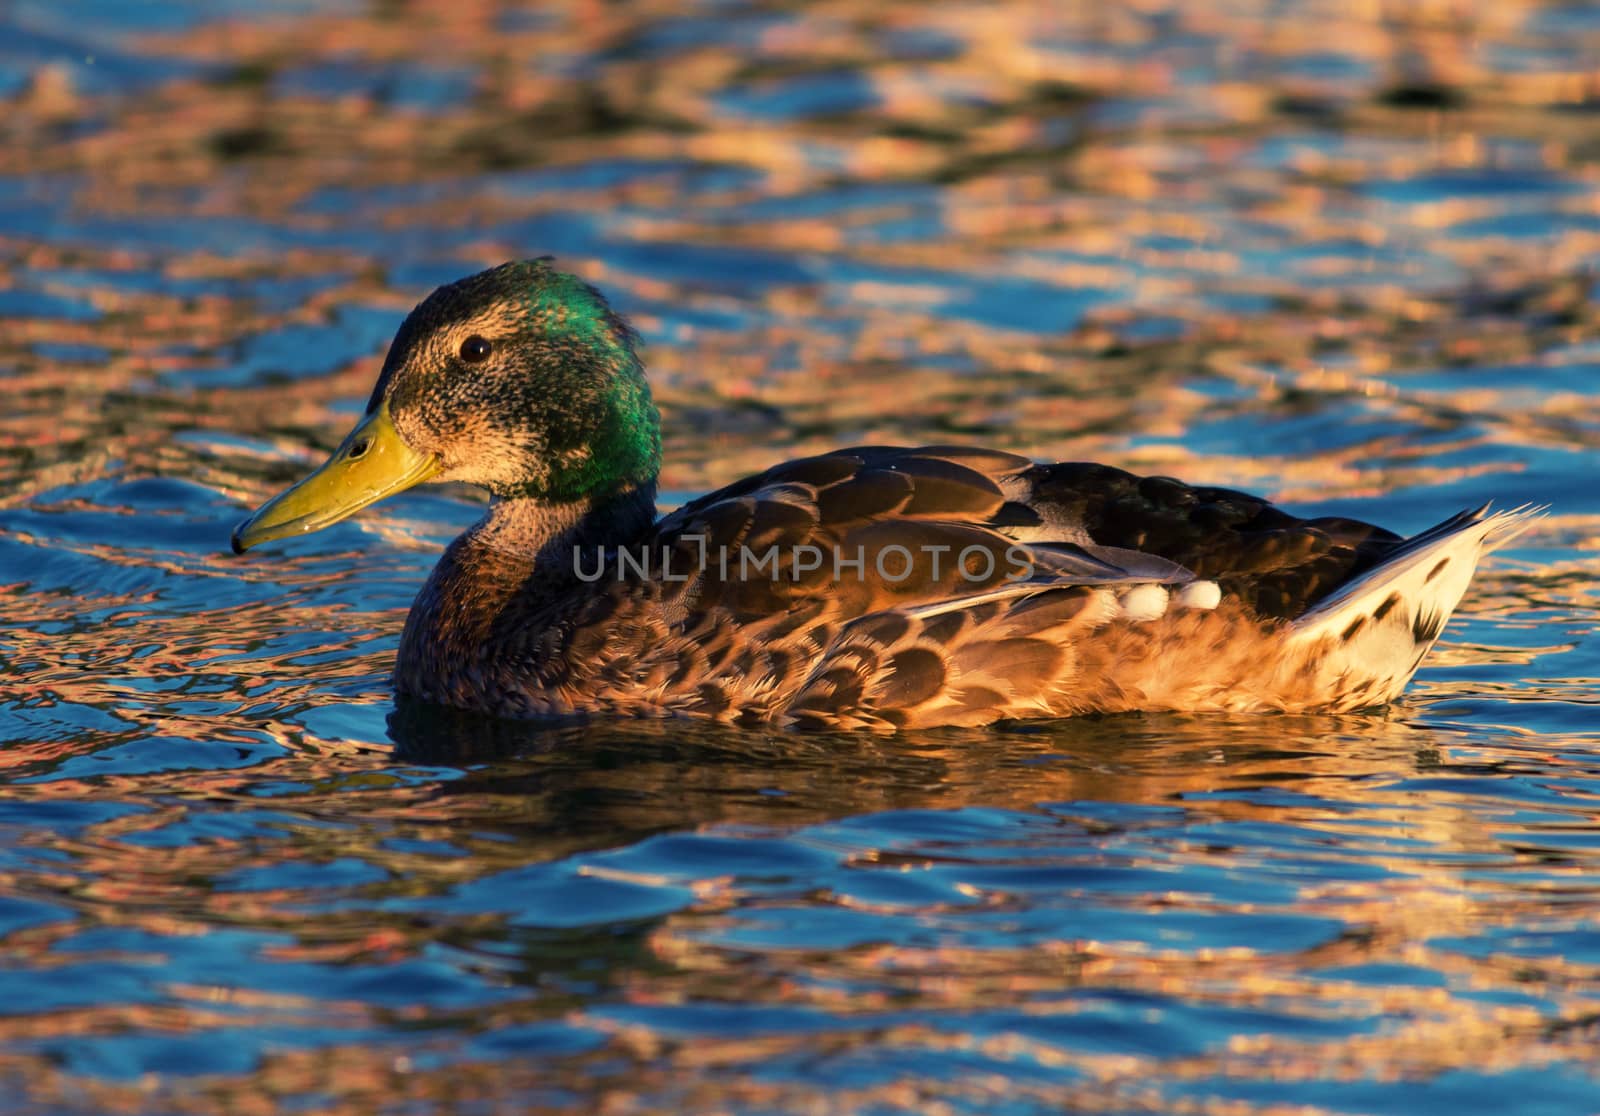 Ducks swimming in swamp in summer by liwei12